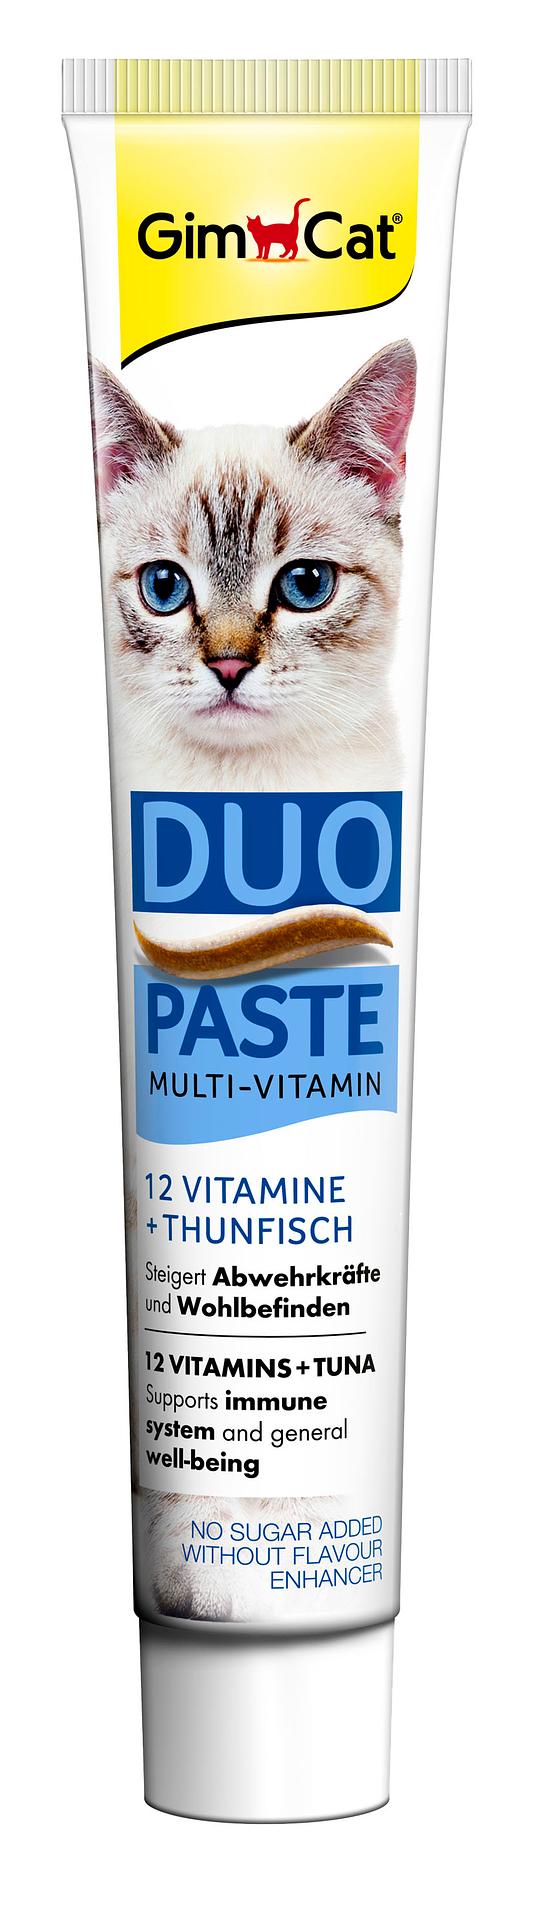 Due Paste Thunfisch + 12 Vitamine 50g